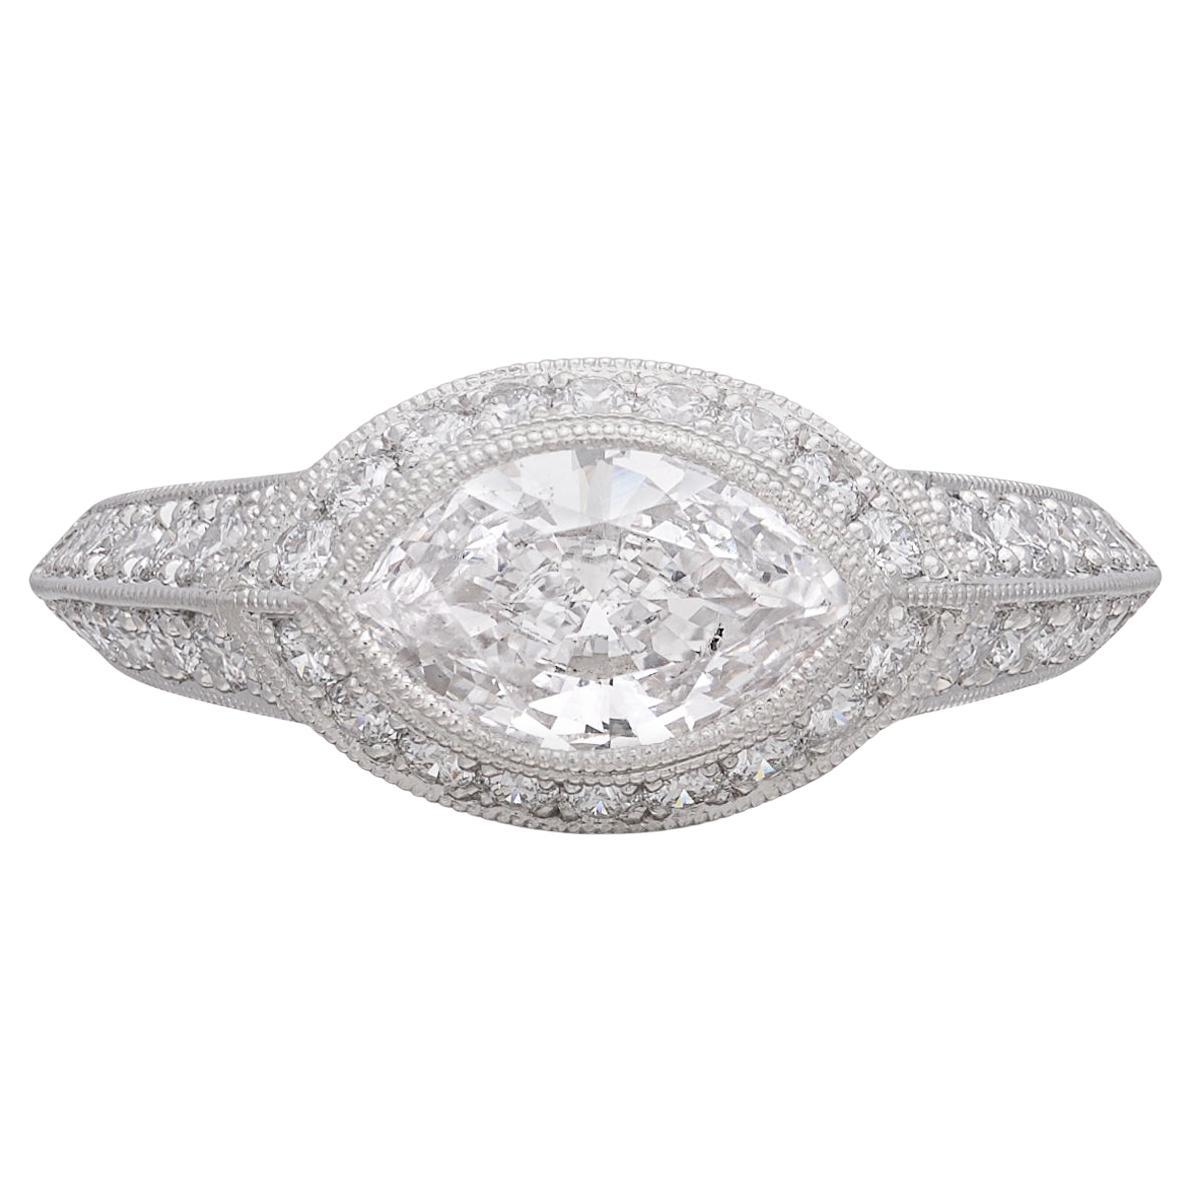 Unique Marquise Cut Platinum Diamond Ring